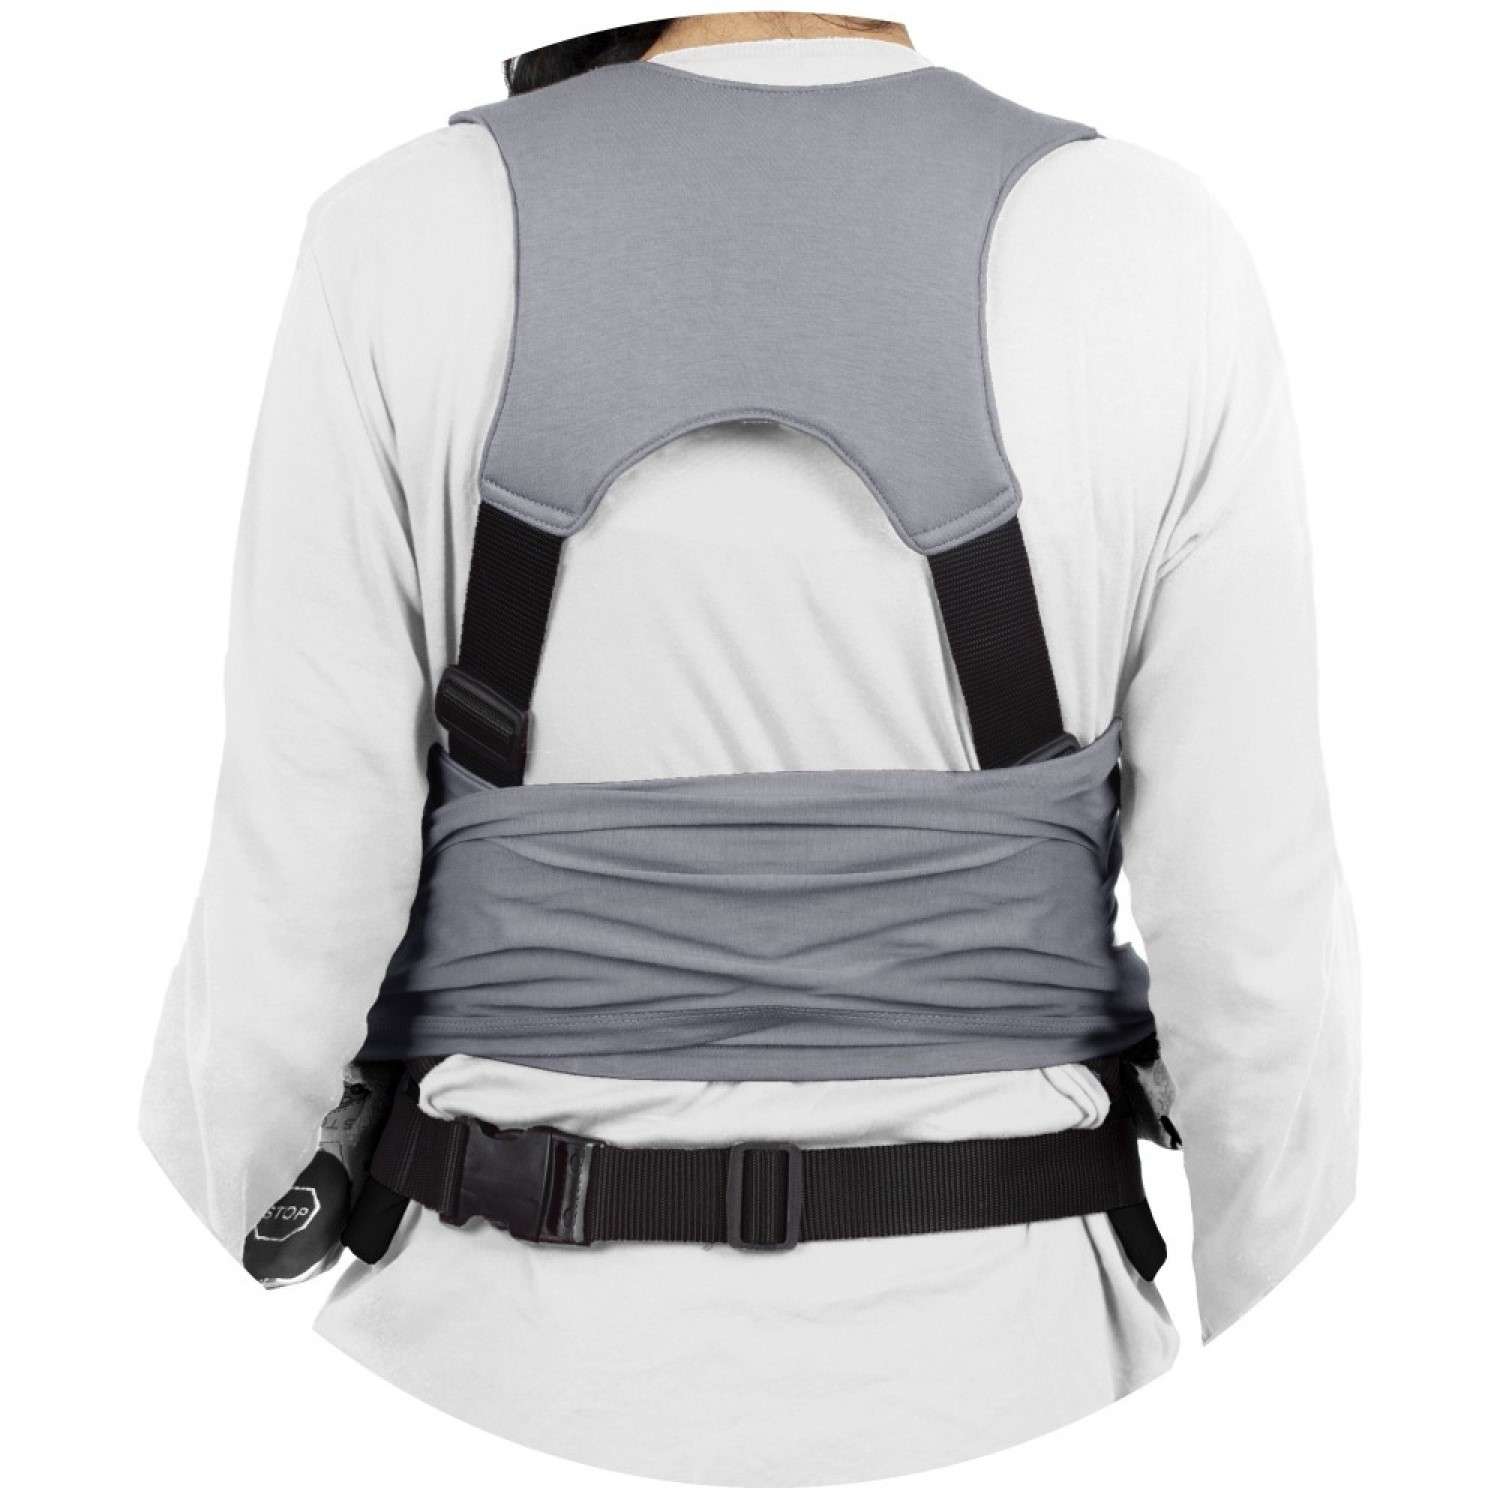 Слинг-шарф SEVIBEBE с функцией поддержки спины родителя для деток весом 3-12 кг - фото 4